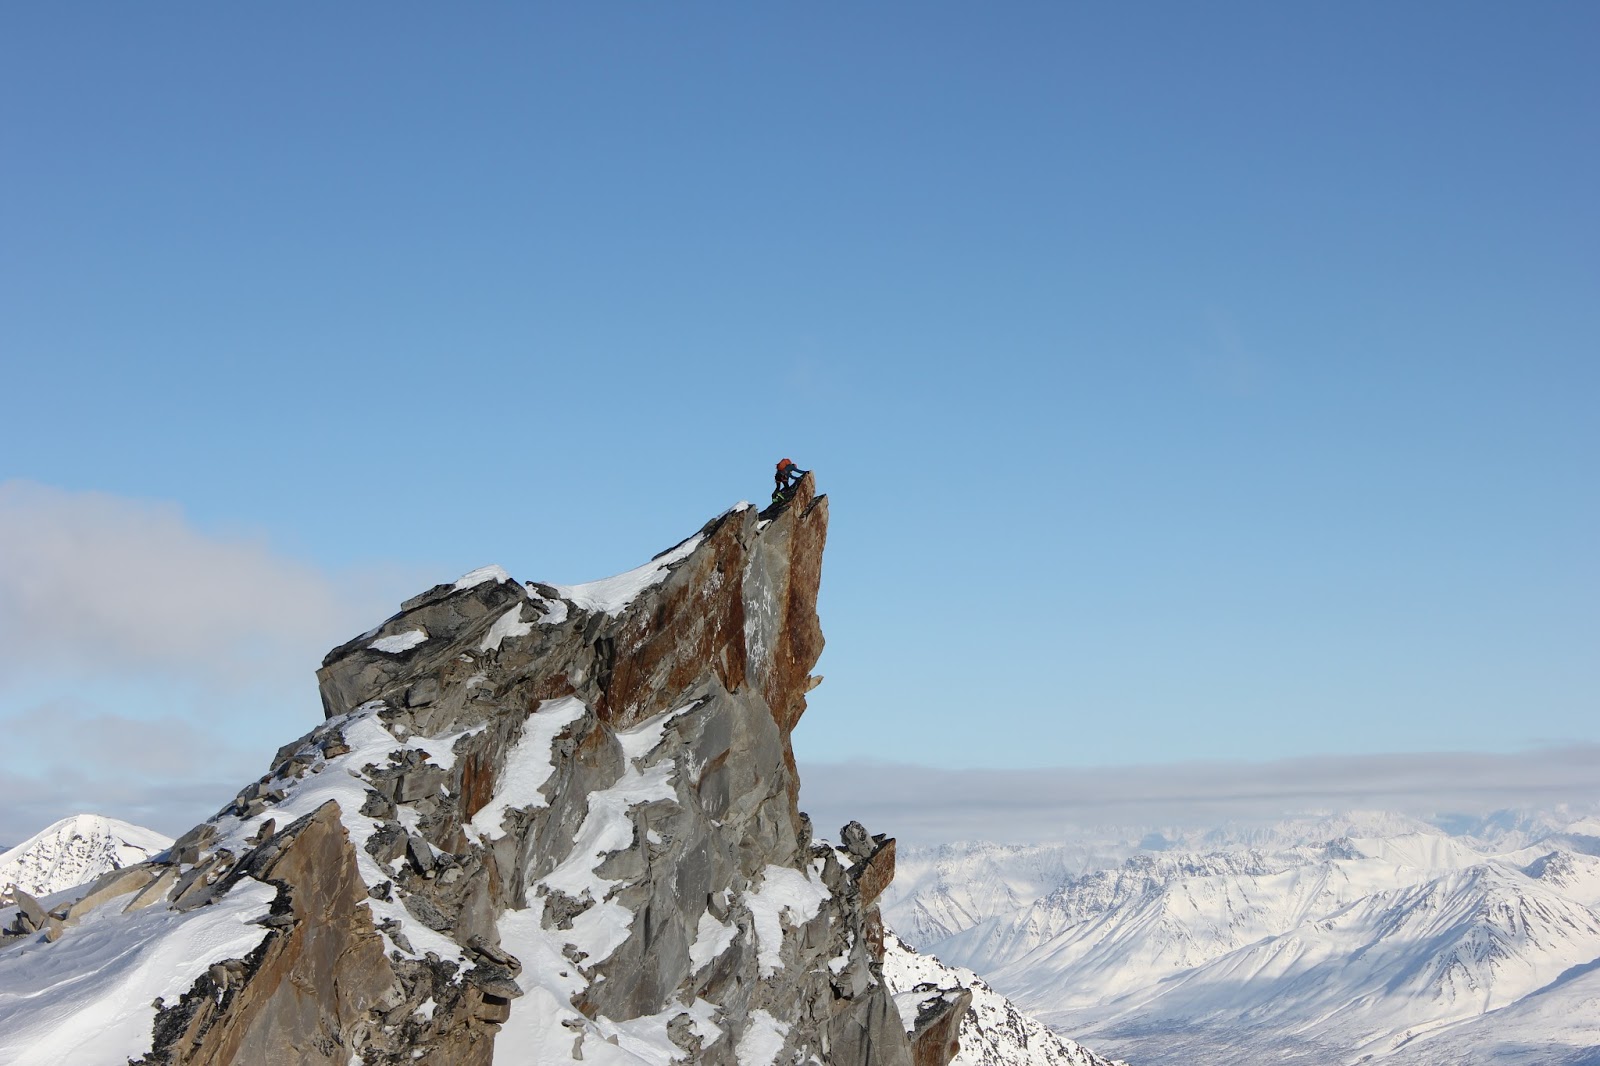 Одна из двух высших точек пика Пророк (Prophet Peak) высотой 2100 метров. Команда так и не смогла определить главную из них, поэтому поднялась на обе